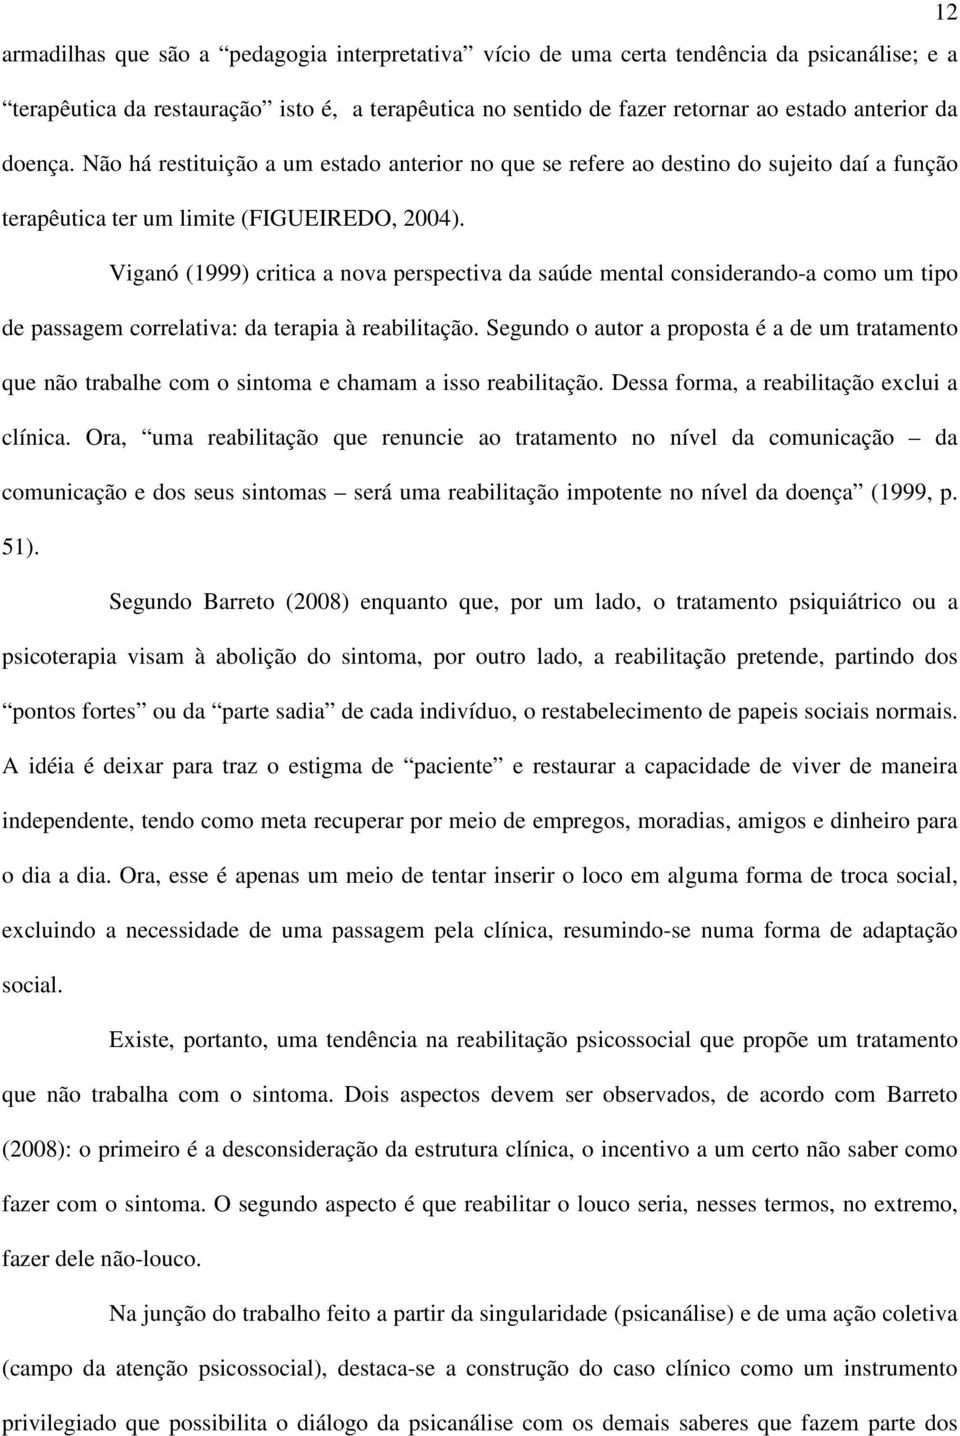 Viganó (1999) critica a nova perspectiva da saúde mental considerando-a como um tipo de passagem correlativa: da terapia à reabilitação.